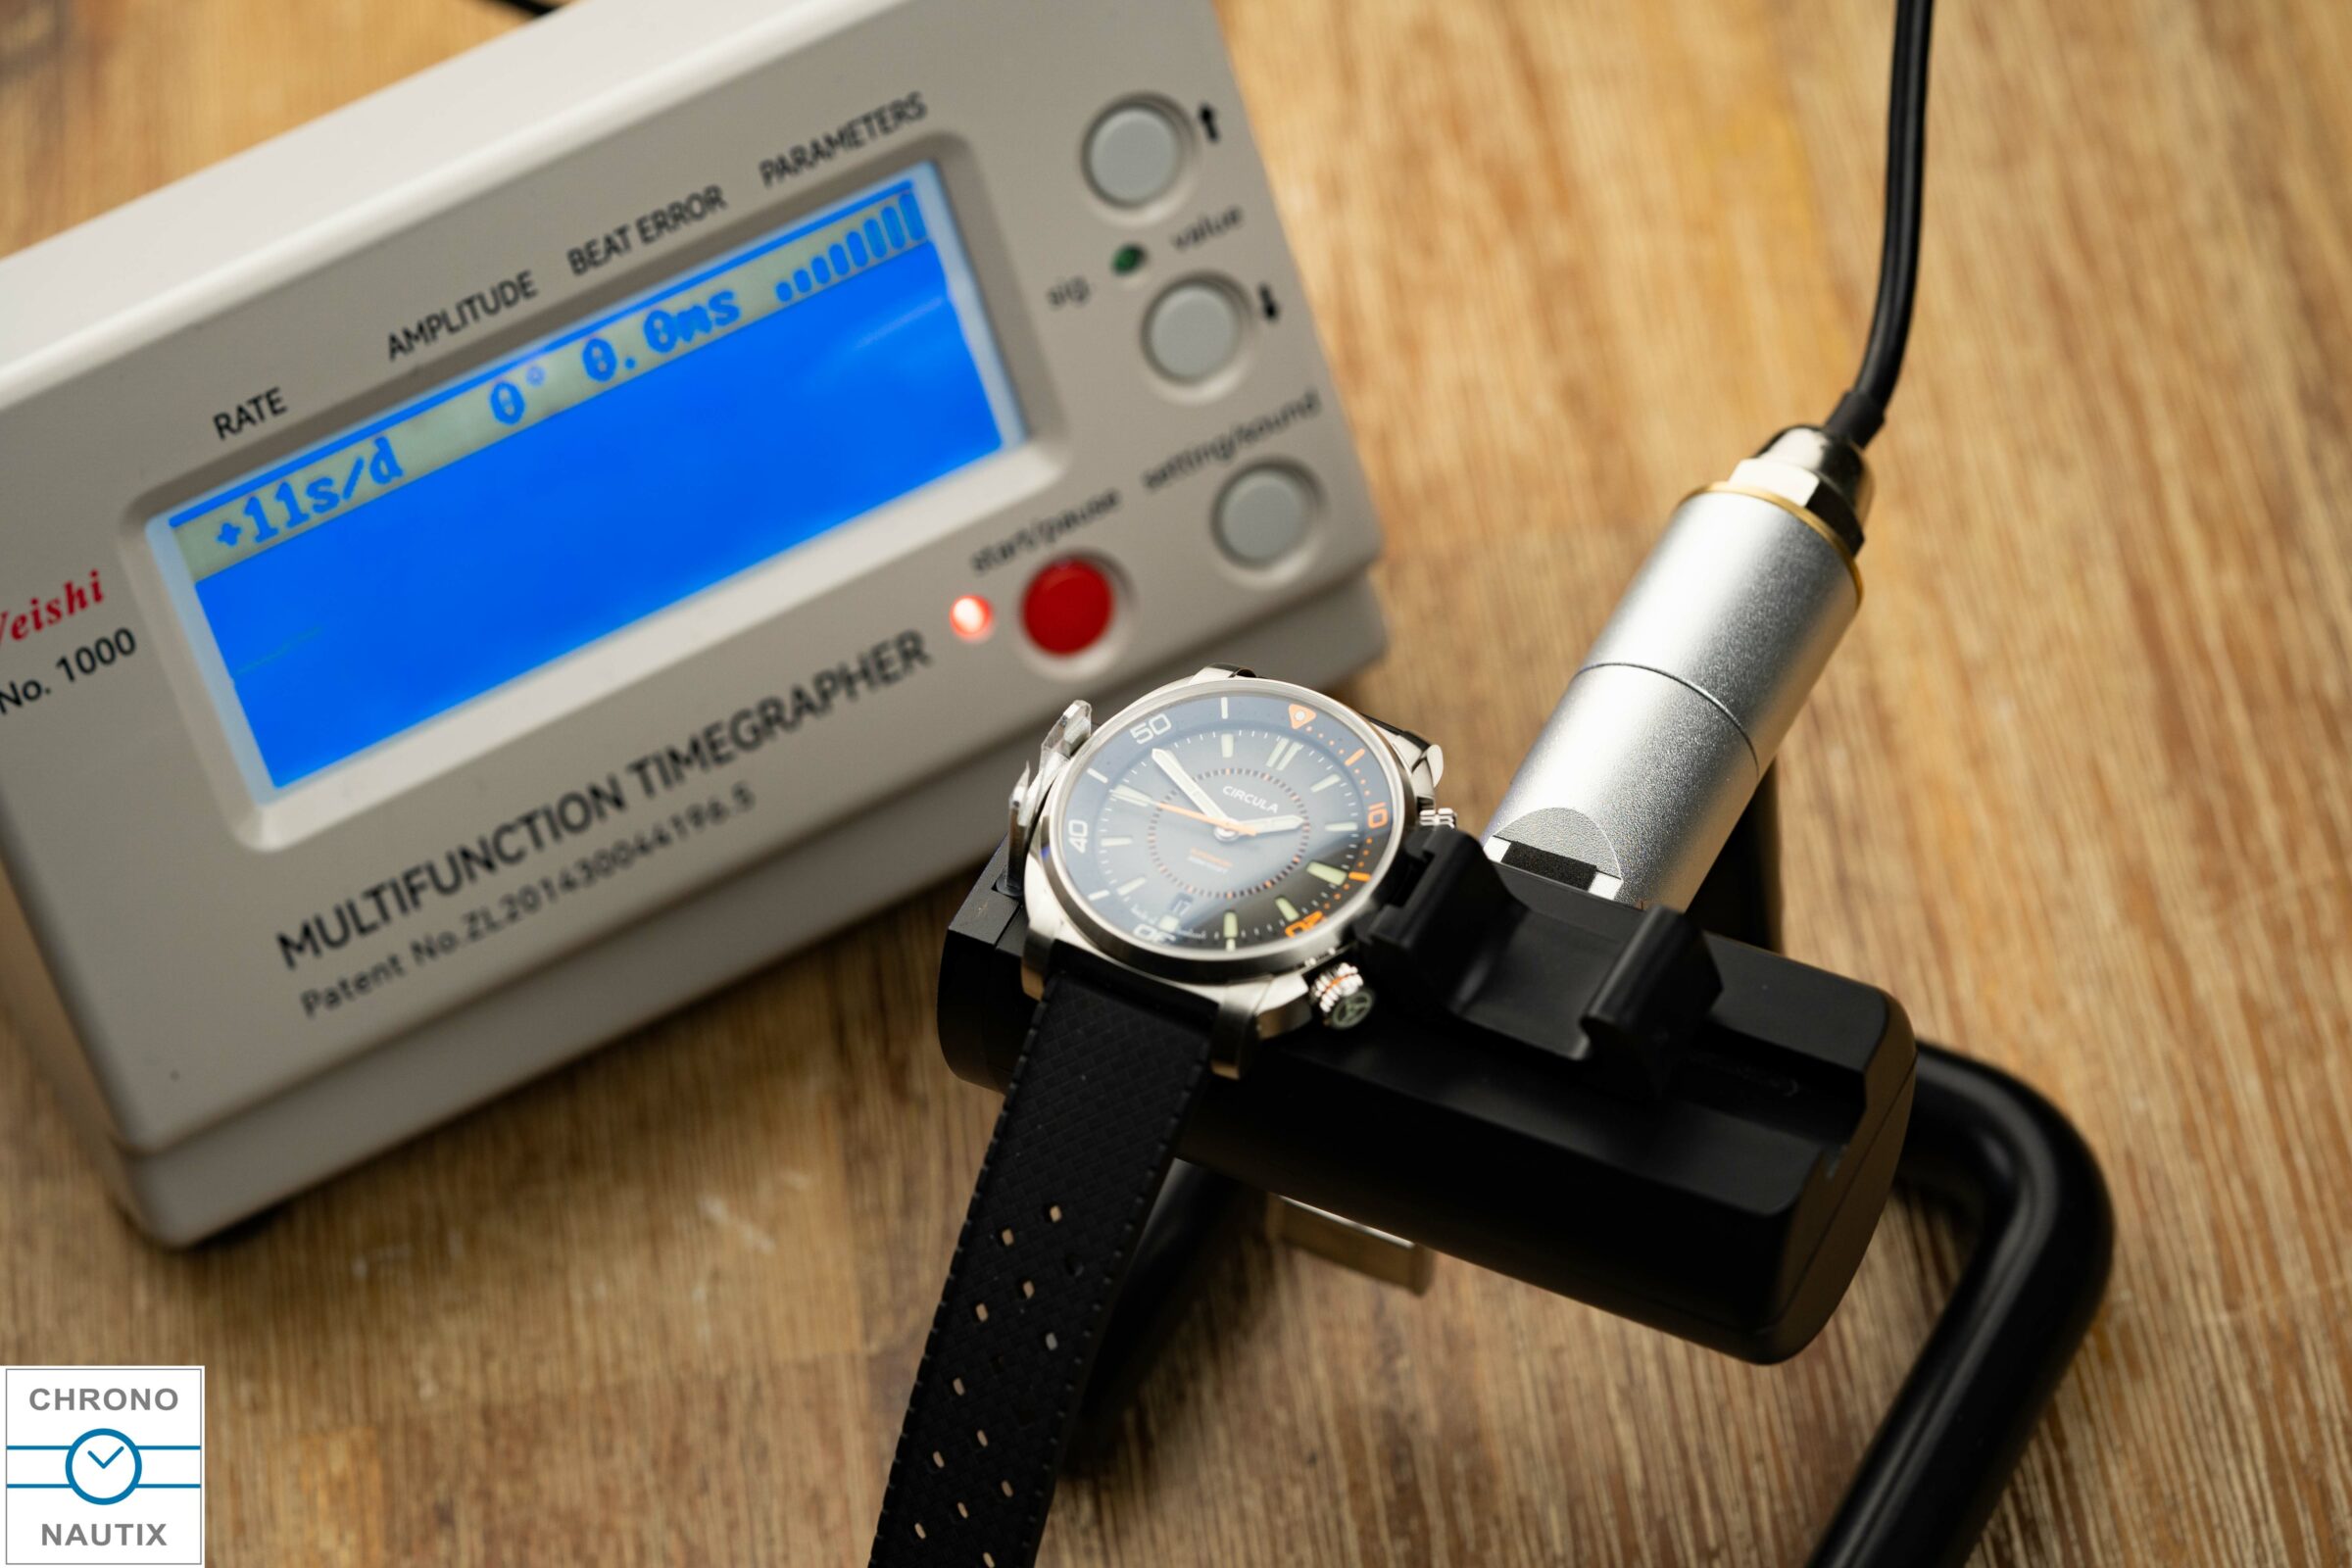 Weishi 1000 Zeitwaage Timegrapher Test 12